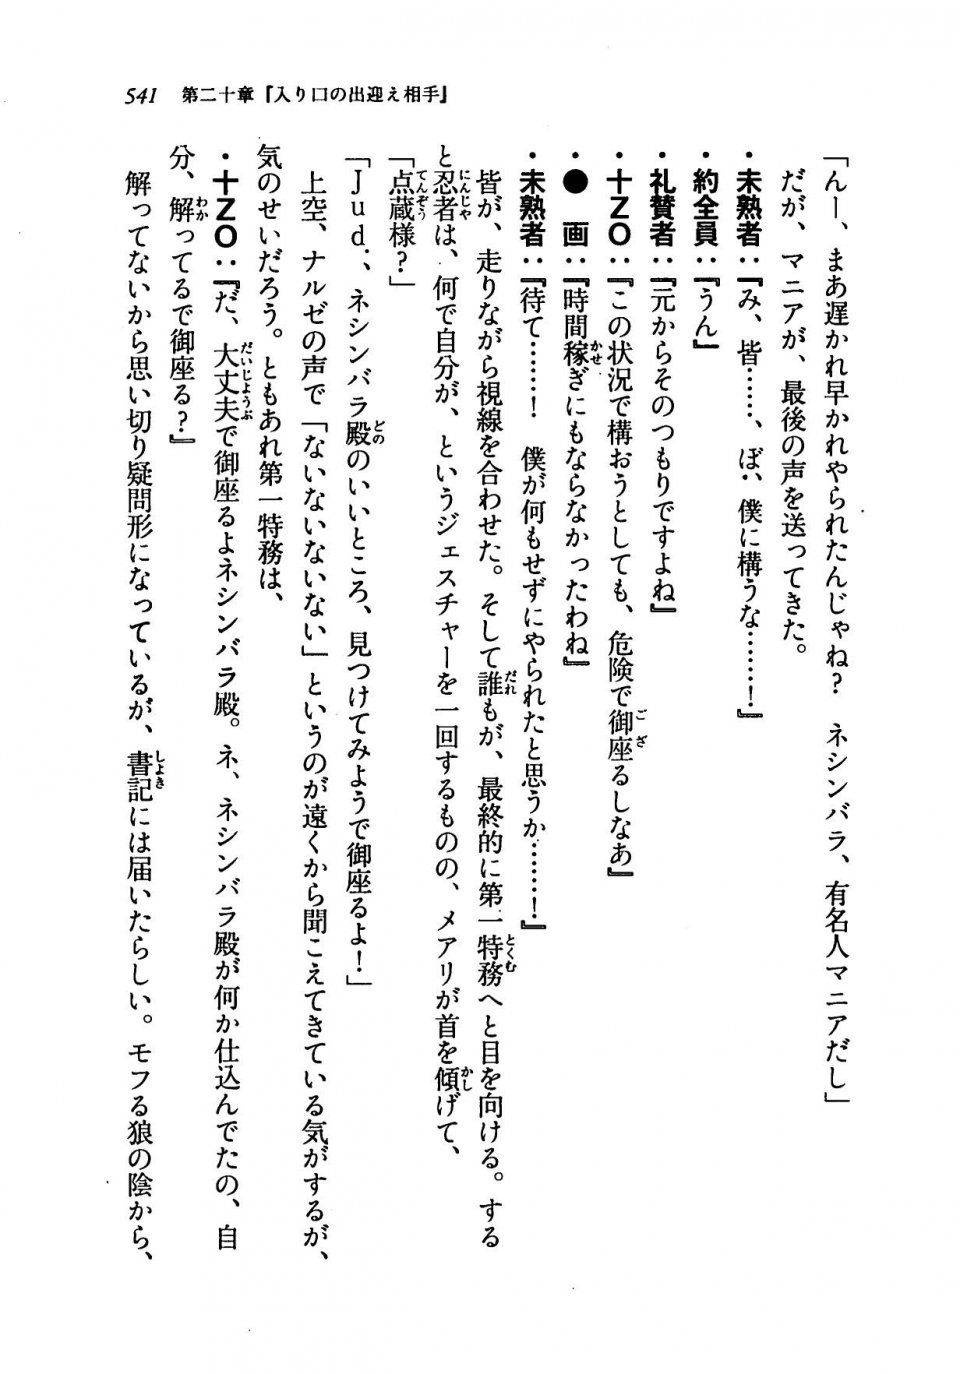 Kyoukai Senjou no Horizon LN Vol 19(8A) - Photo #541